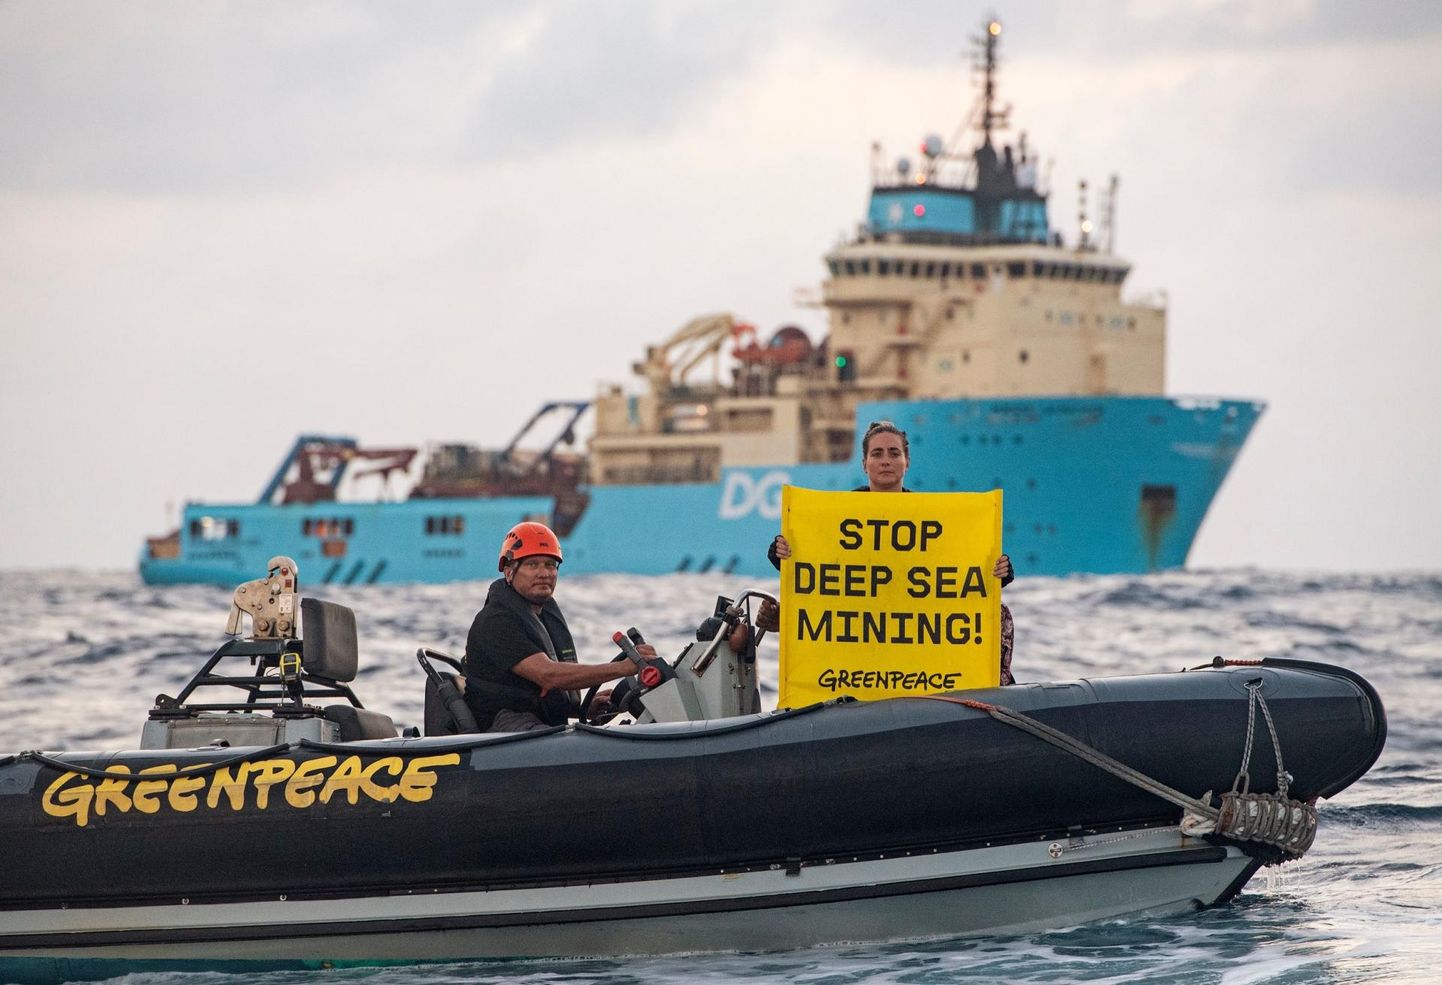 Greenpeace’i aktivist Alice protestimas 5. aprillil Maerski teenindatava haruldaste metallide süvamerekaevandamise projekti «Deep Green» vastu.